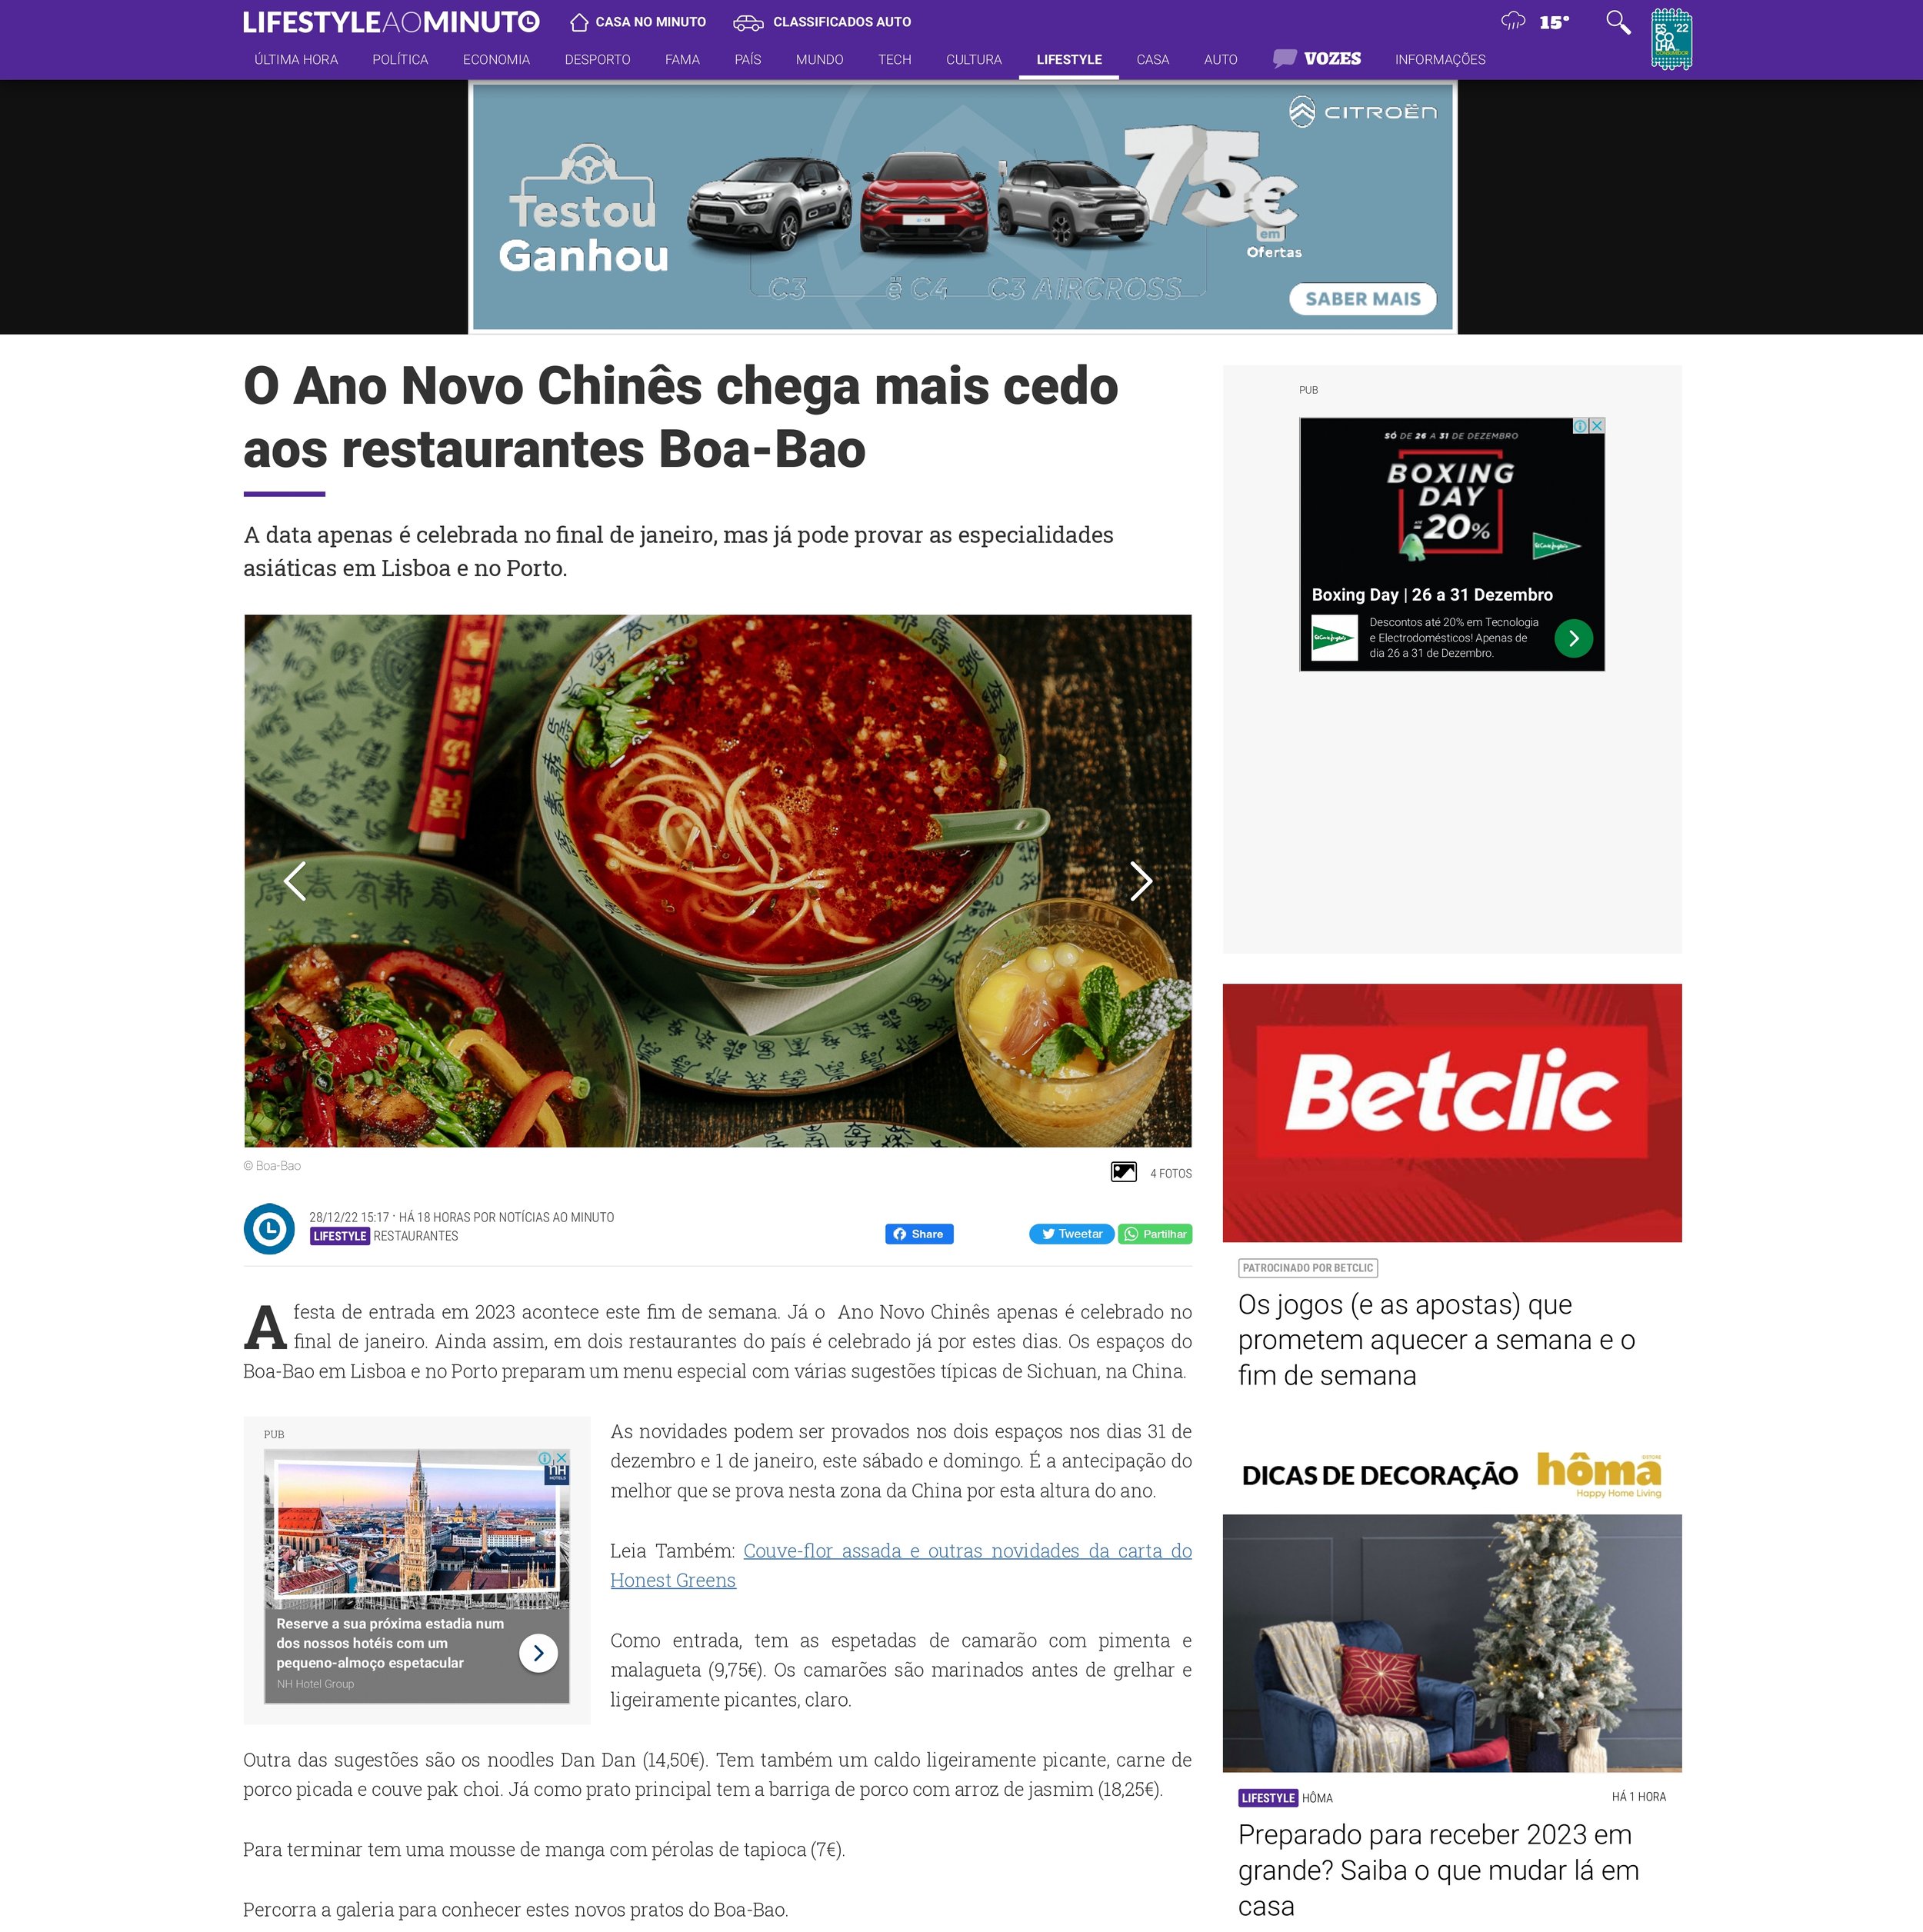 Online Minute News_El Año Nuevo chino llega antes de tiempo a los restaurantes Boa-Bao_page-0001.jpg